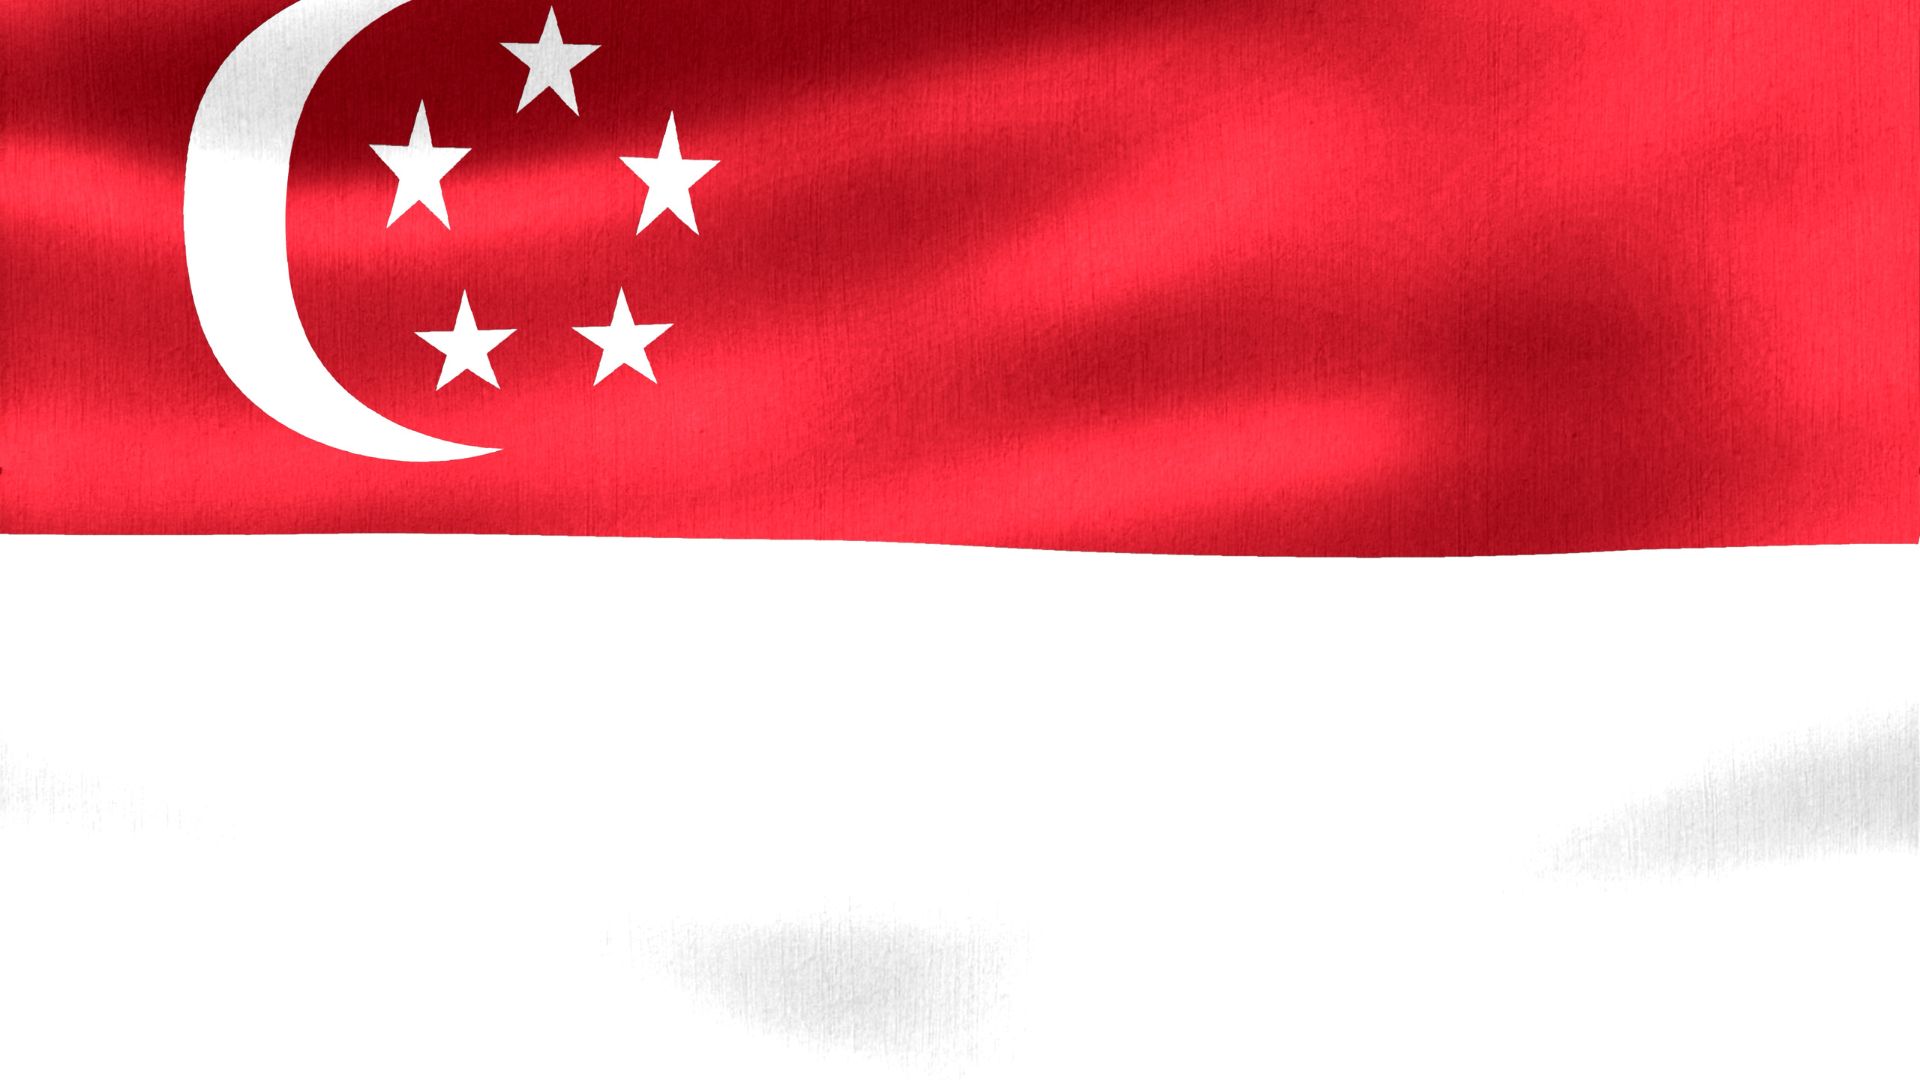 A bandeira de Cingapura possui cinco estrelas que representam os ideais do país: progresso, paz, justiça, igualdade e democracia. A lua representa uma nação jovem e crescente, e não o Islamismo, como alguns pensam. Suas cores são vermelha e branca.